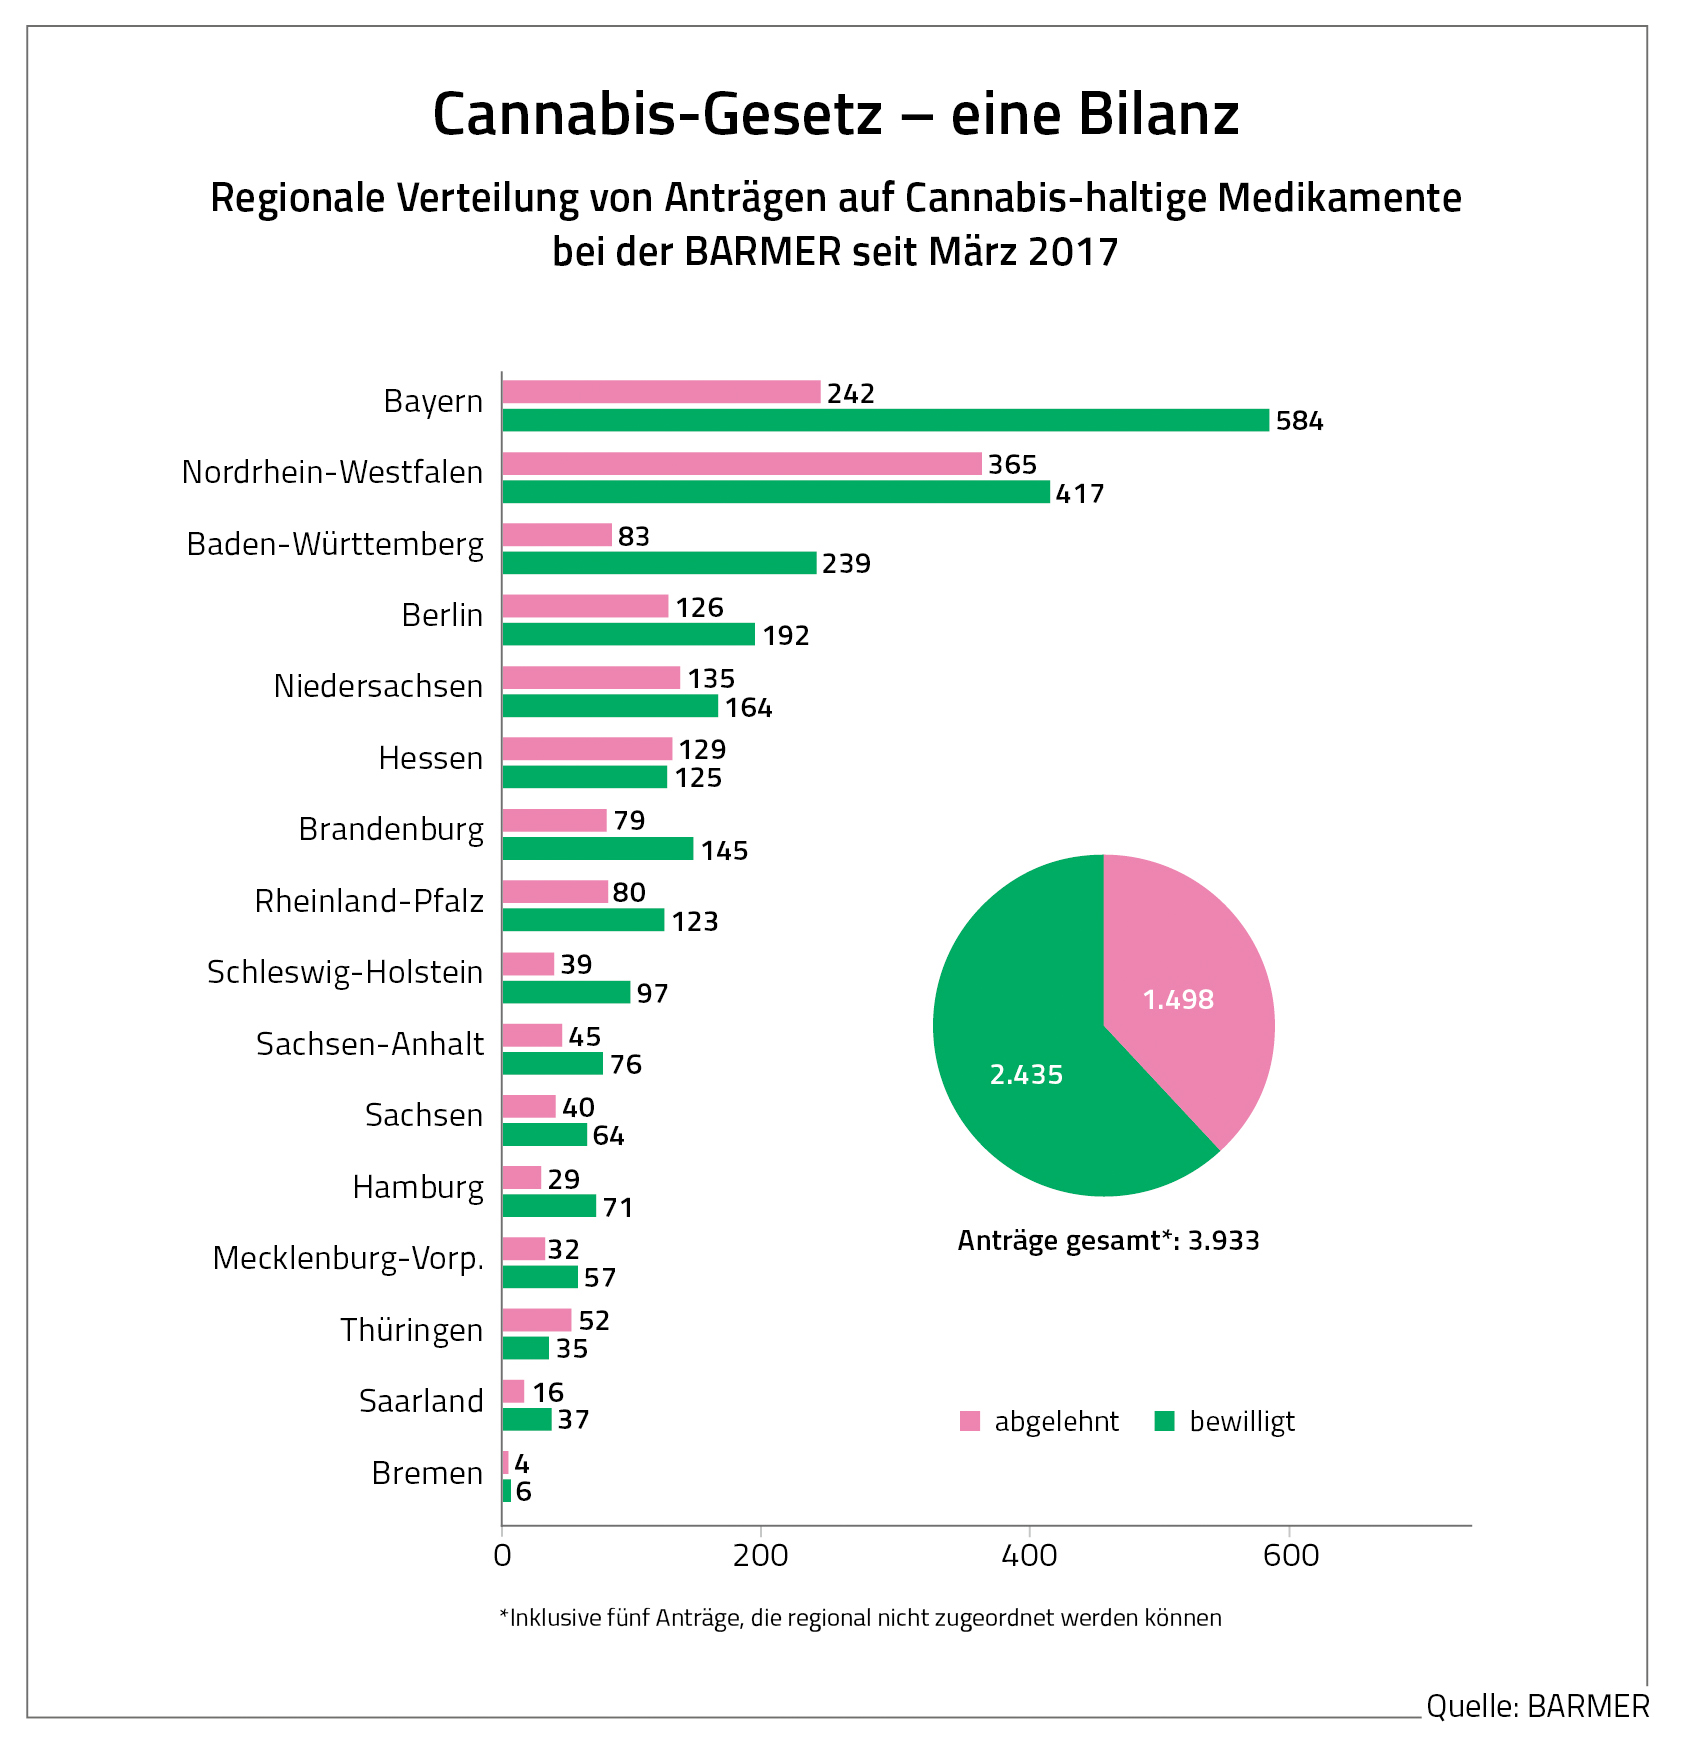 Cannabis-Anträge nach Ländern